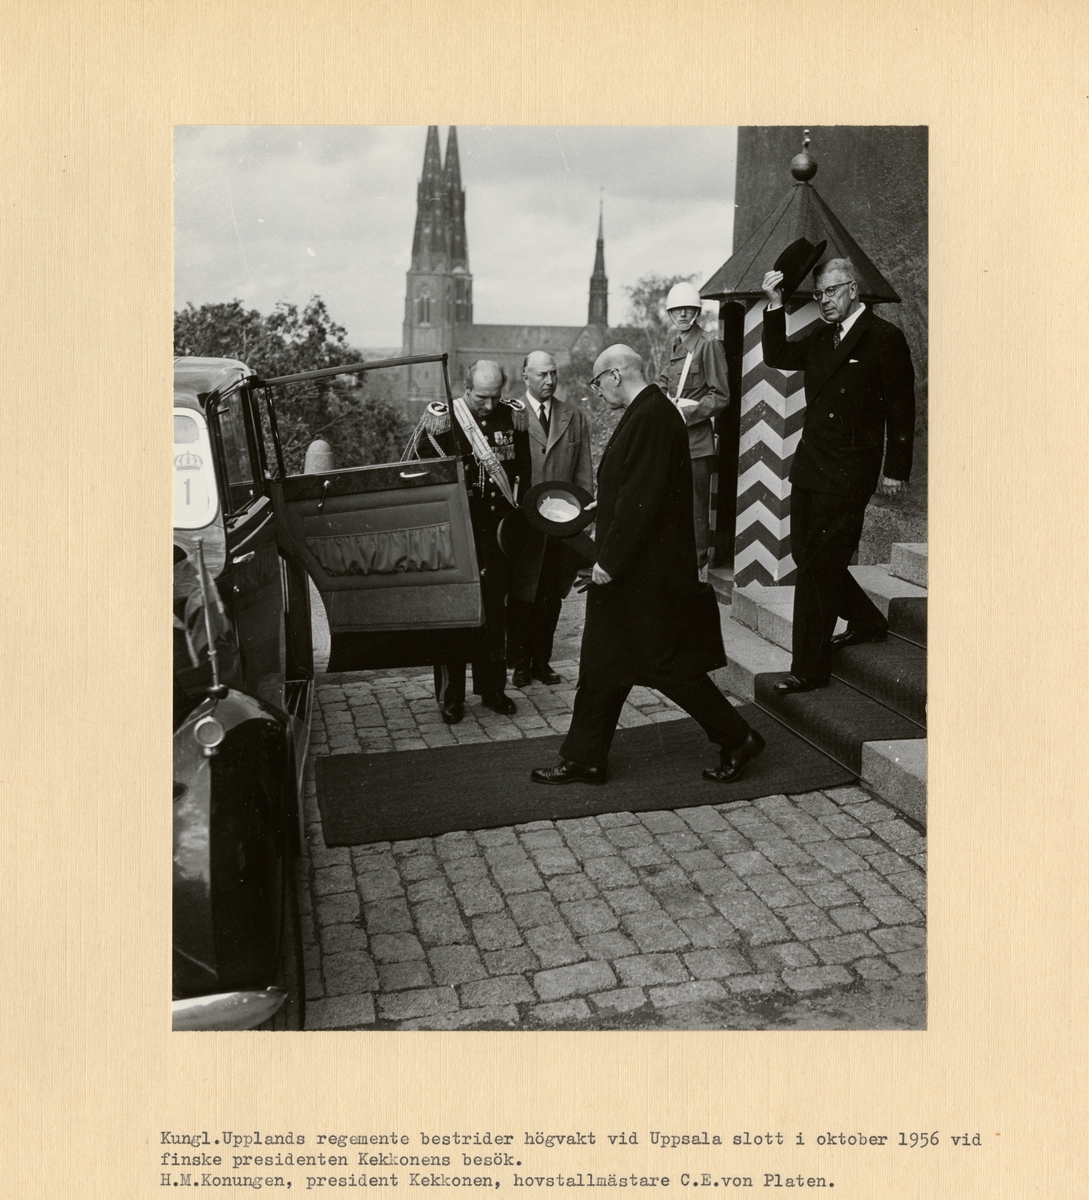 Text i fotoalbum:"Kungl. Upplands regemente bestrider högvakt vid Uppsala slott i oktober 1956 vid finske presidenten Kekkonens besök. H.M.Konungen, president Kekkonen, hovstallmästare C.E. von Platen."